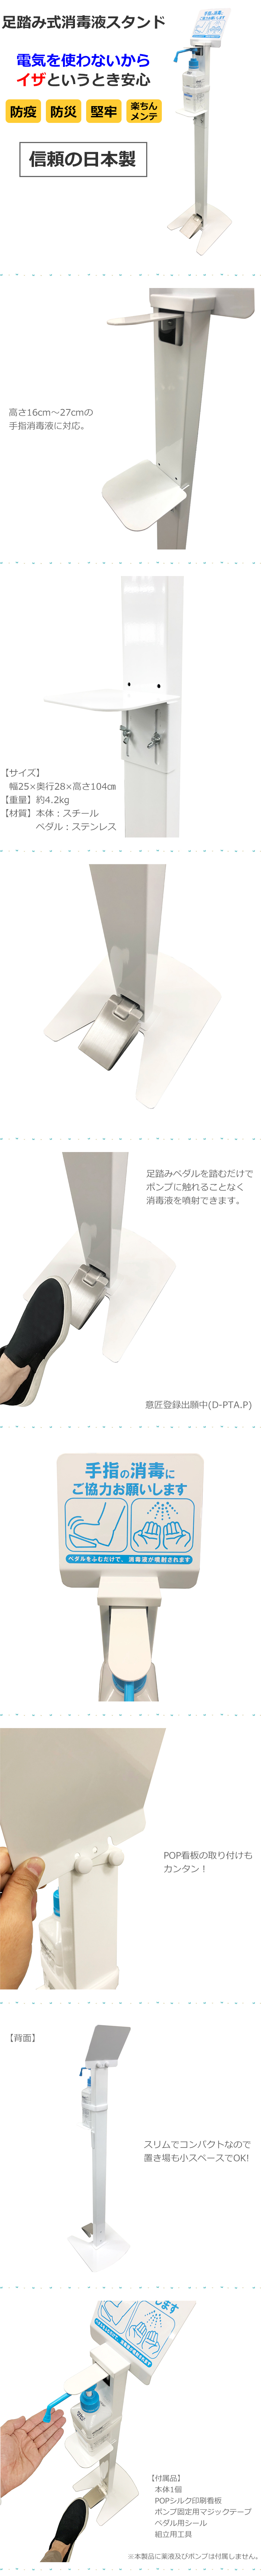 消毒液 スタンド 足踏み 日本製 足踏み式消毒液スタンド アルコール オフィス お店 イベント